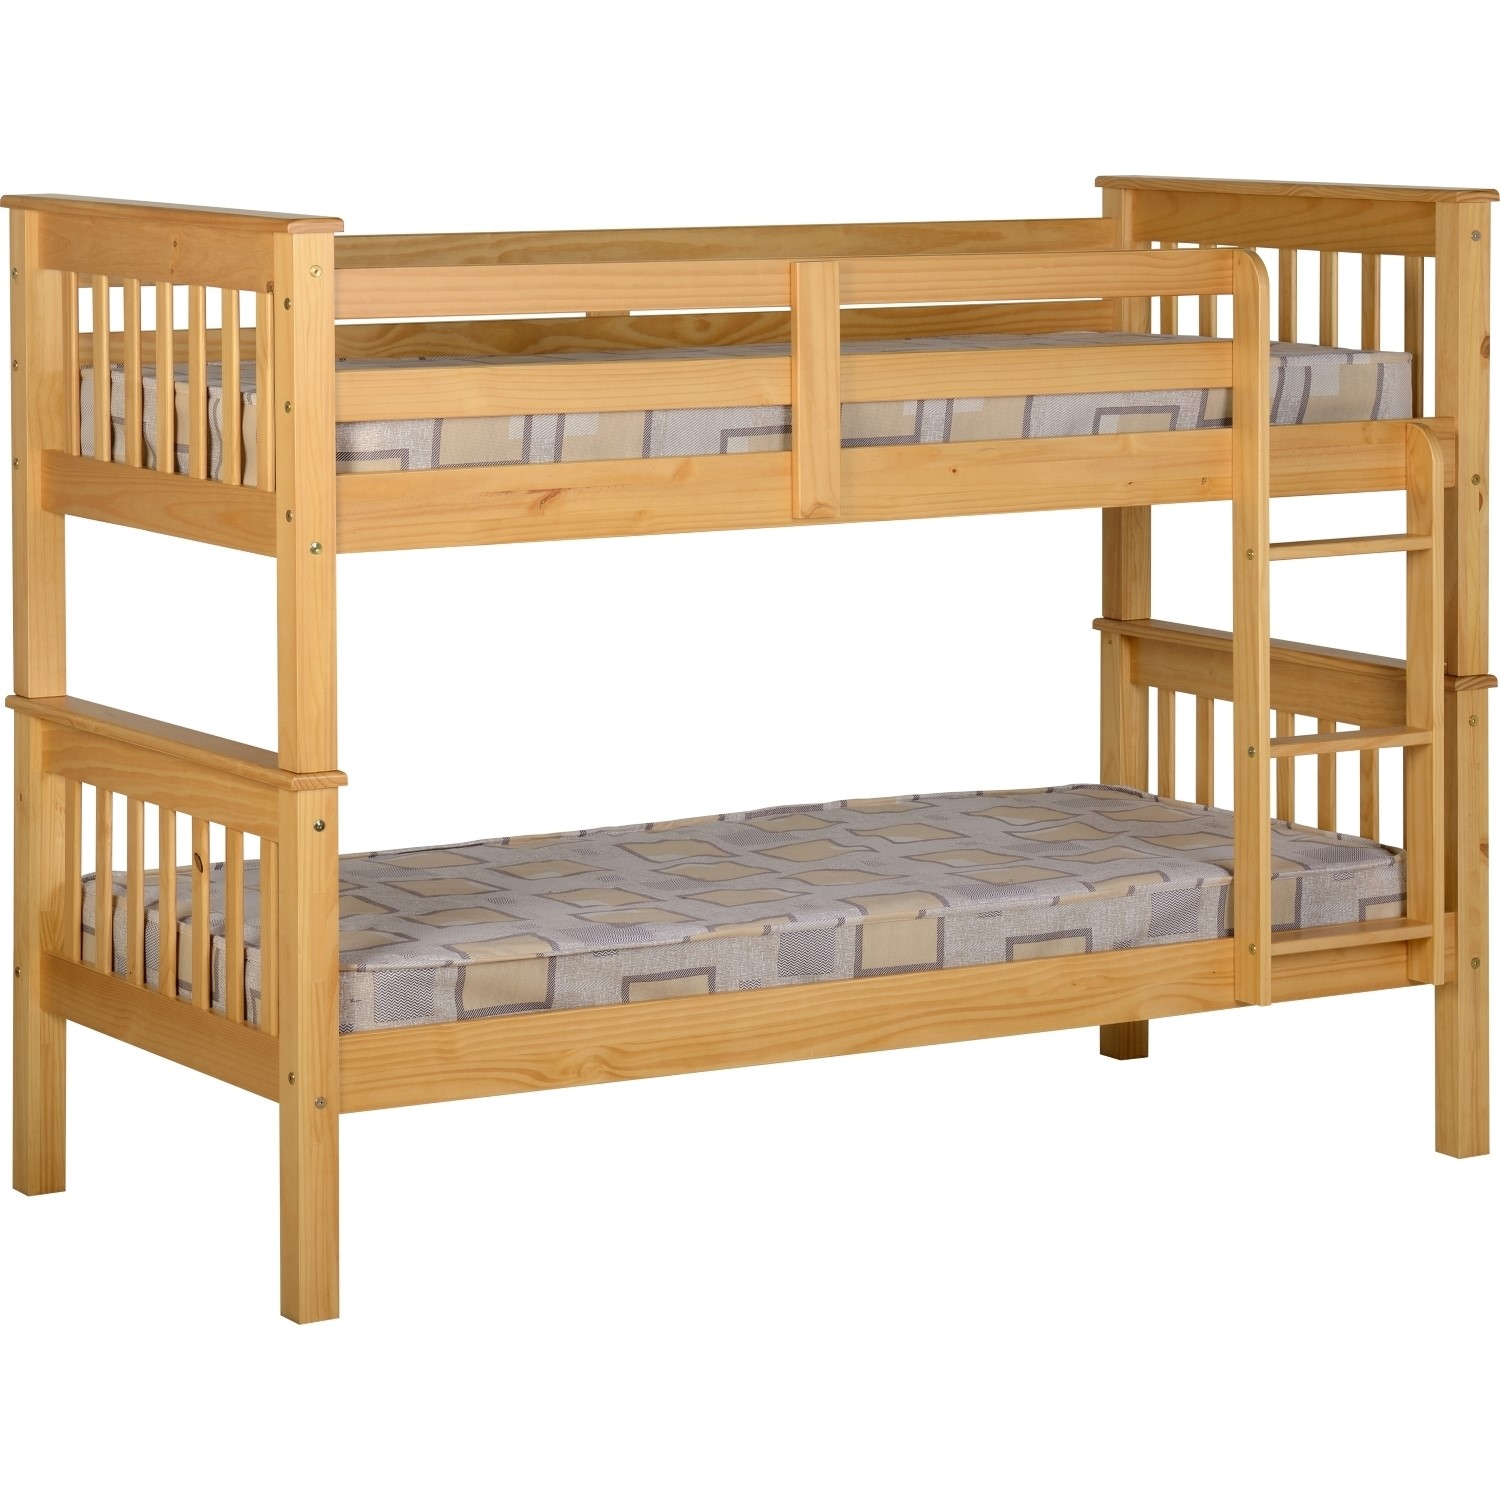 Read more about Pine detachable bunk bed neptune seconique